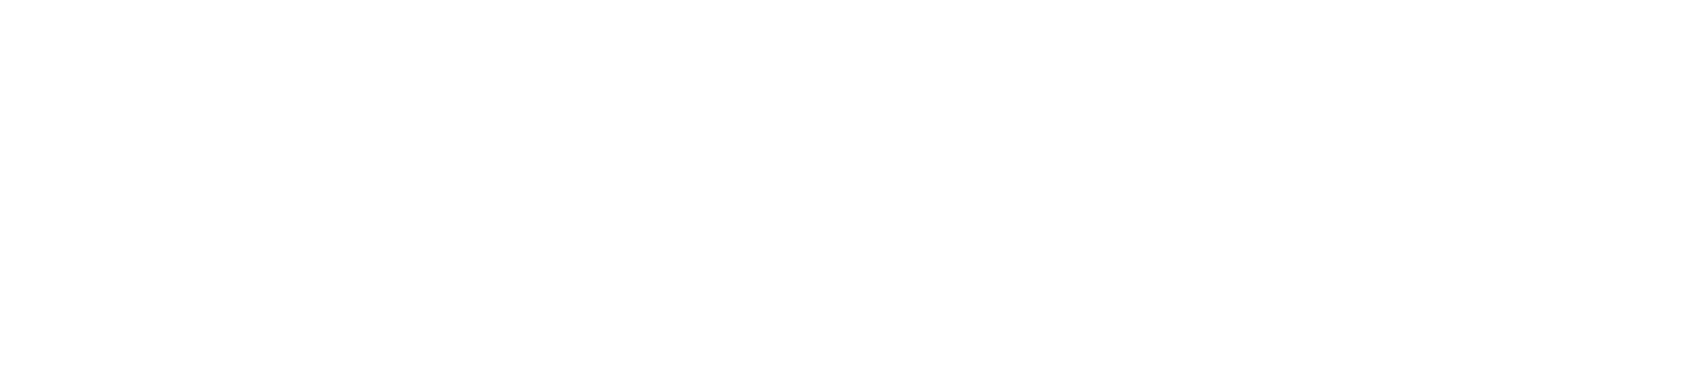 Lemonade logo large for dark backgrounds (transparent PNG)